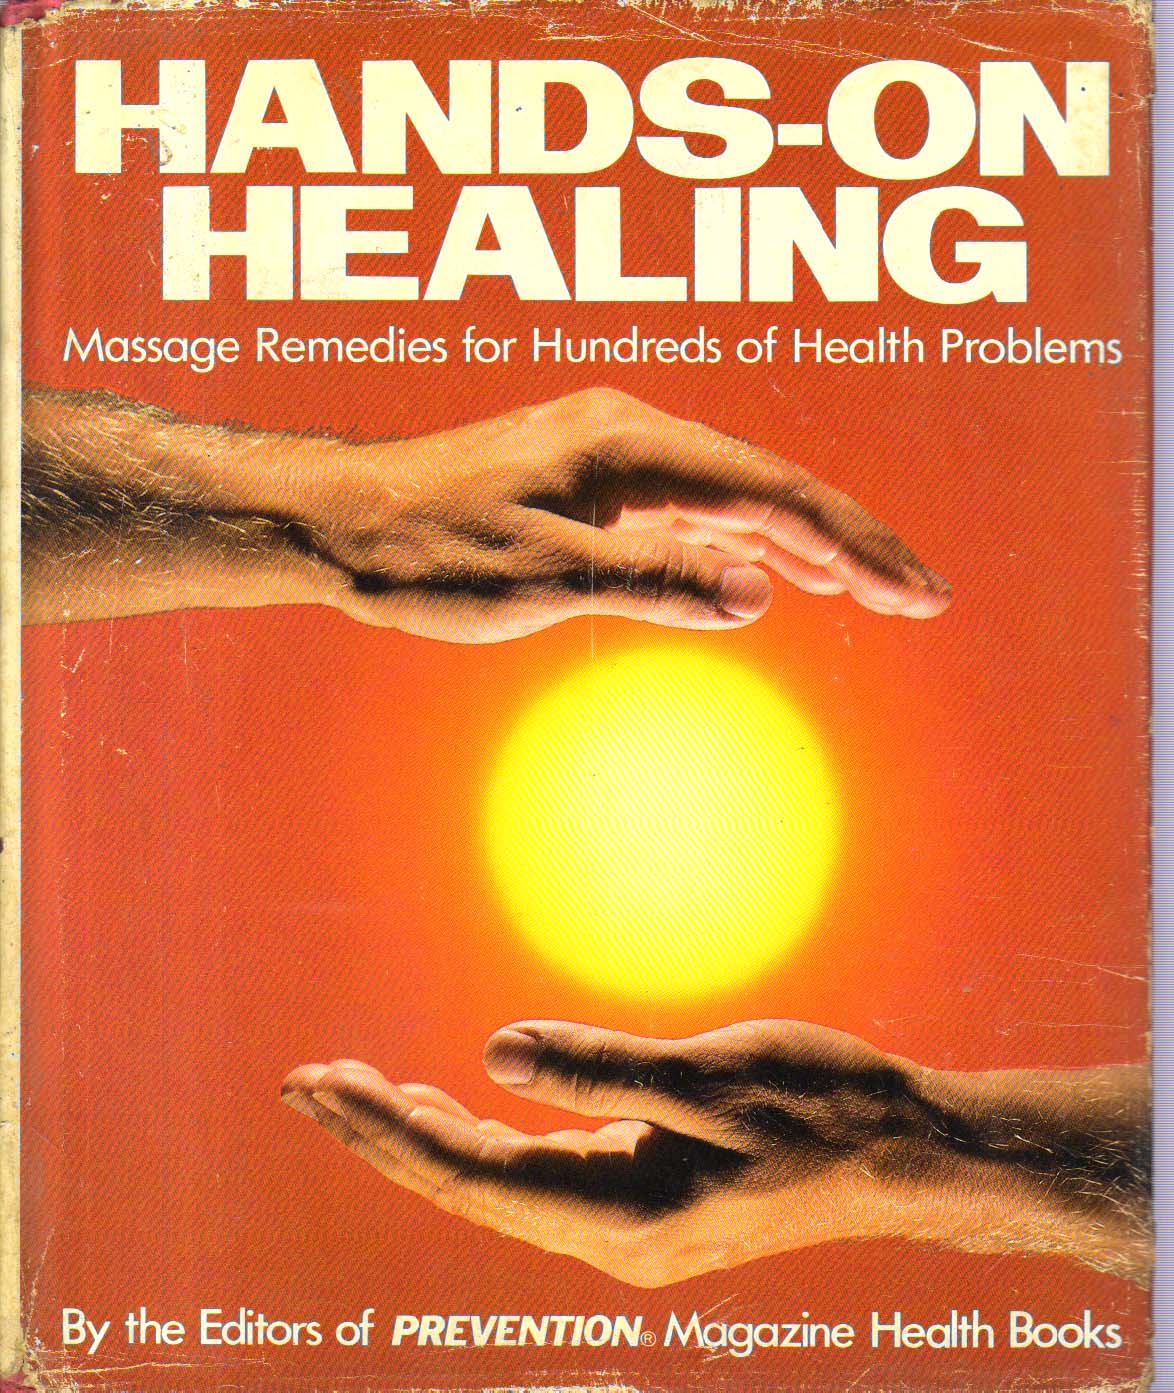 Hands on Healing